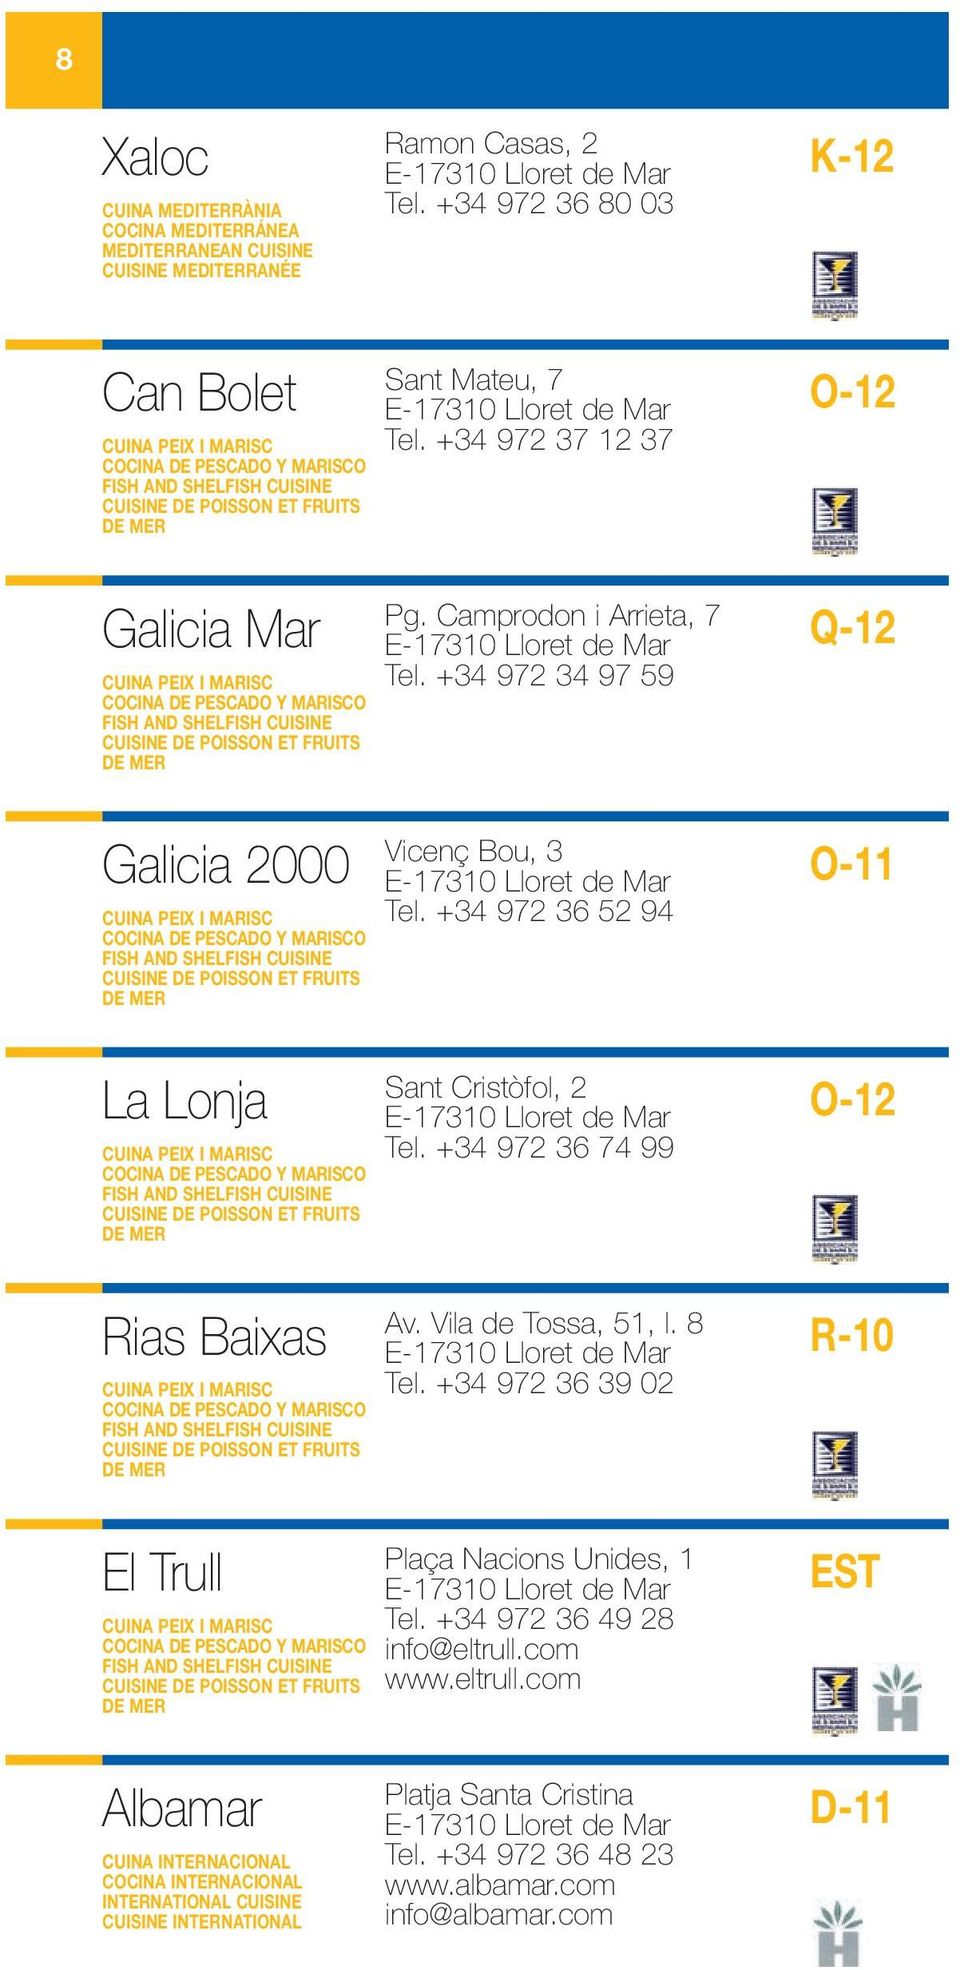 MARISCO FISH AND SHELFISH CUISINE CUISINE DE POISSON ET FRUITS DE MER Galicia 2000 CUINA PEIX I MARISC COCINA DE PESCADO Y MARISCO FISH AND SHELFISH CUISINE CUISINE DE POISSON ET FRUITS DE MER La